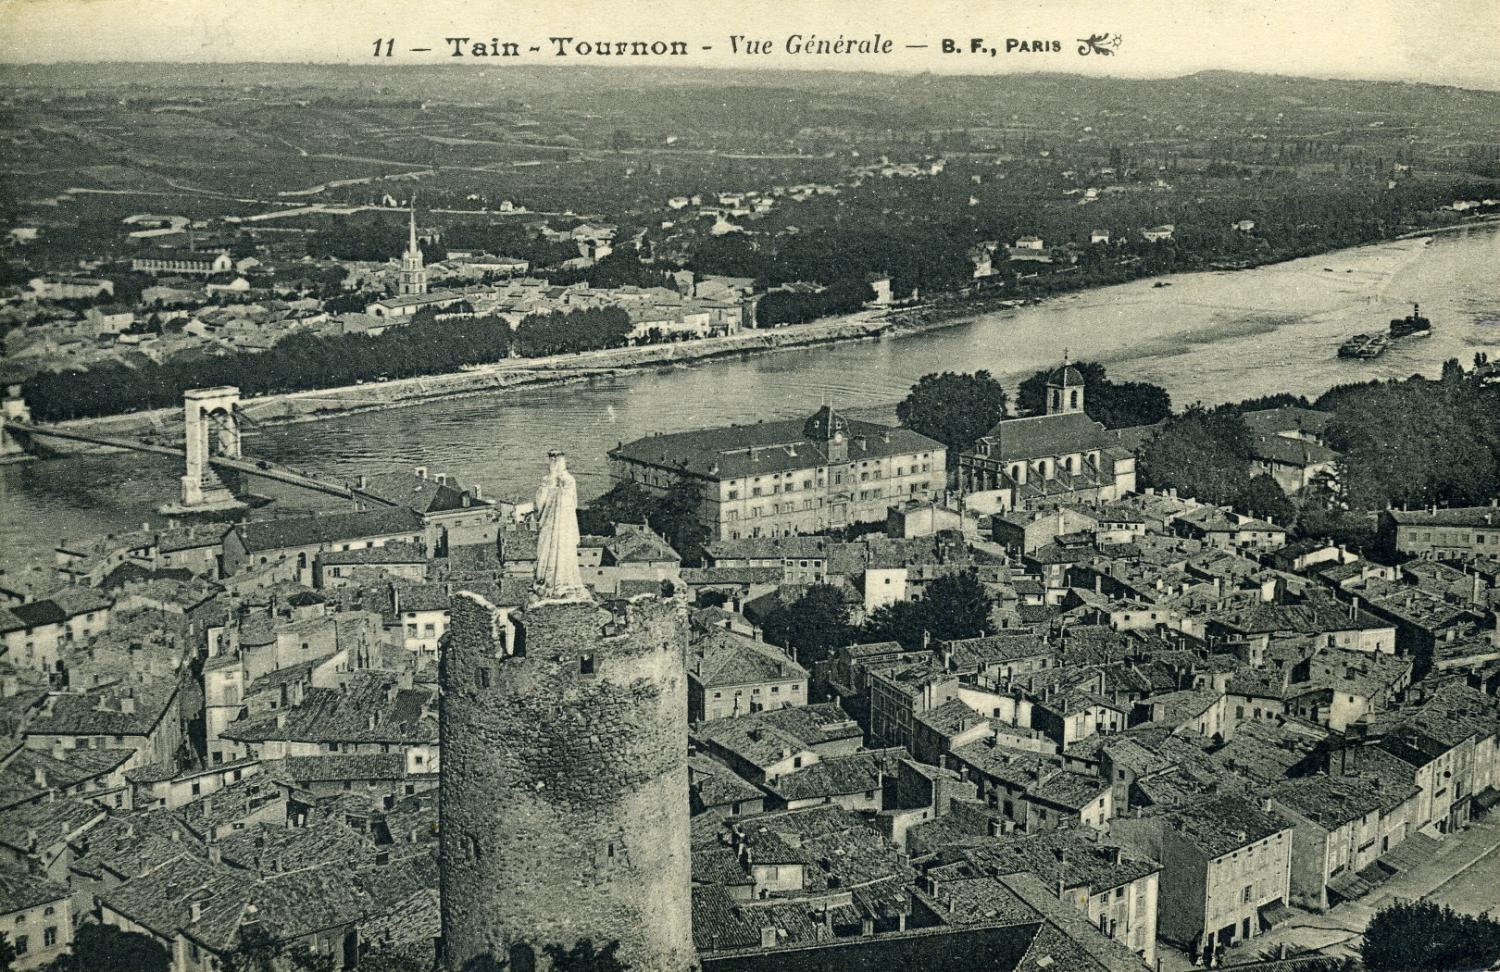 Tain-Tournon